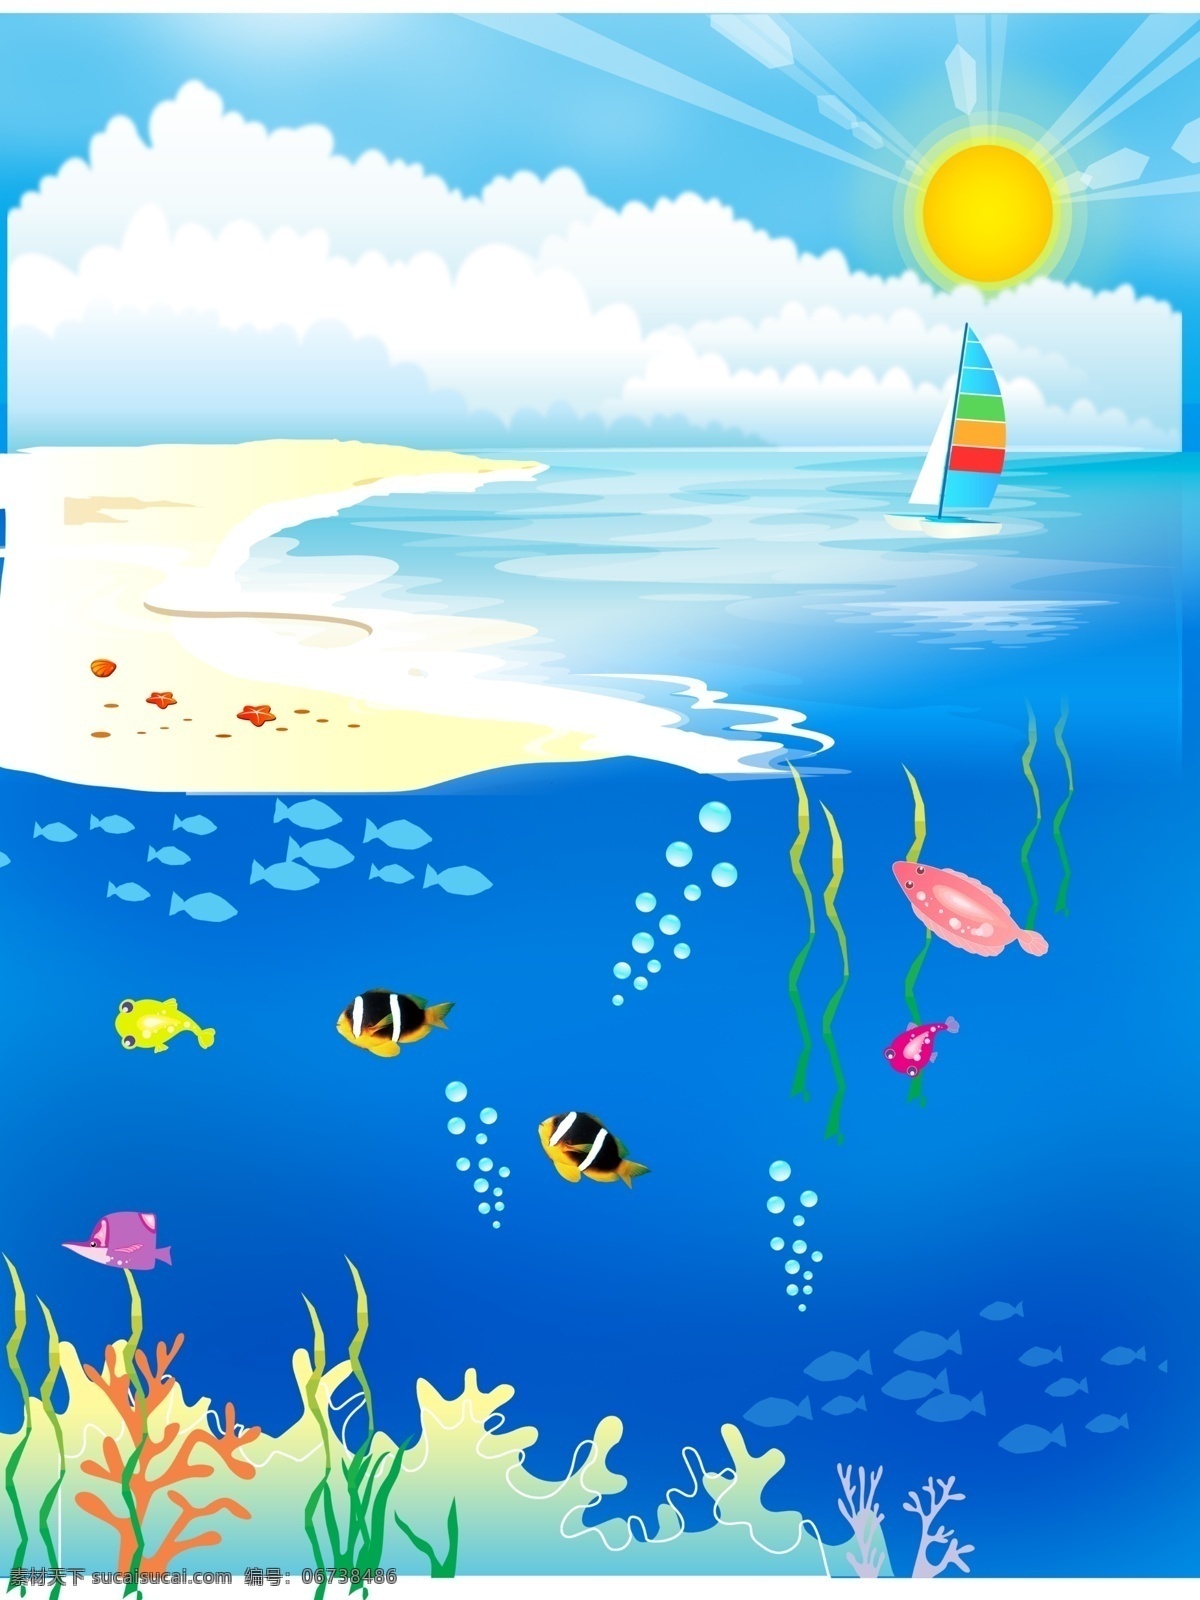 沙滩 海边 海底 世界 阳光 海底世界 小鱼 珊瑚 光线 海藻 帆船 蓝天白云 分层 背景素材